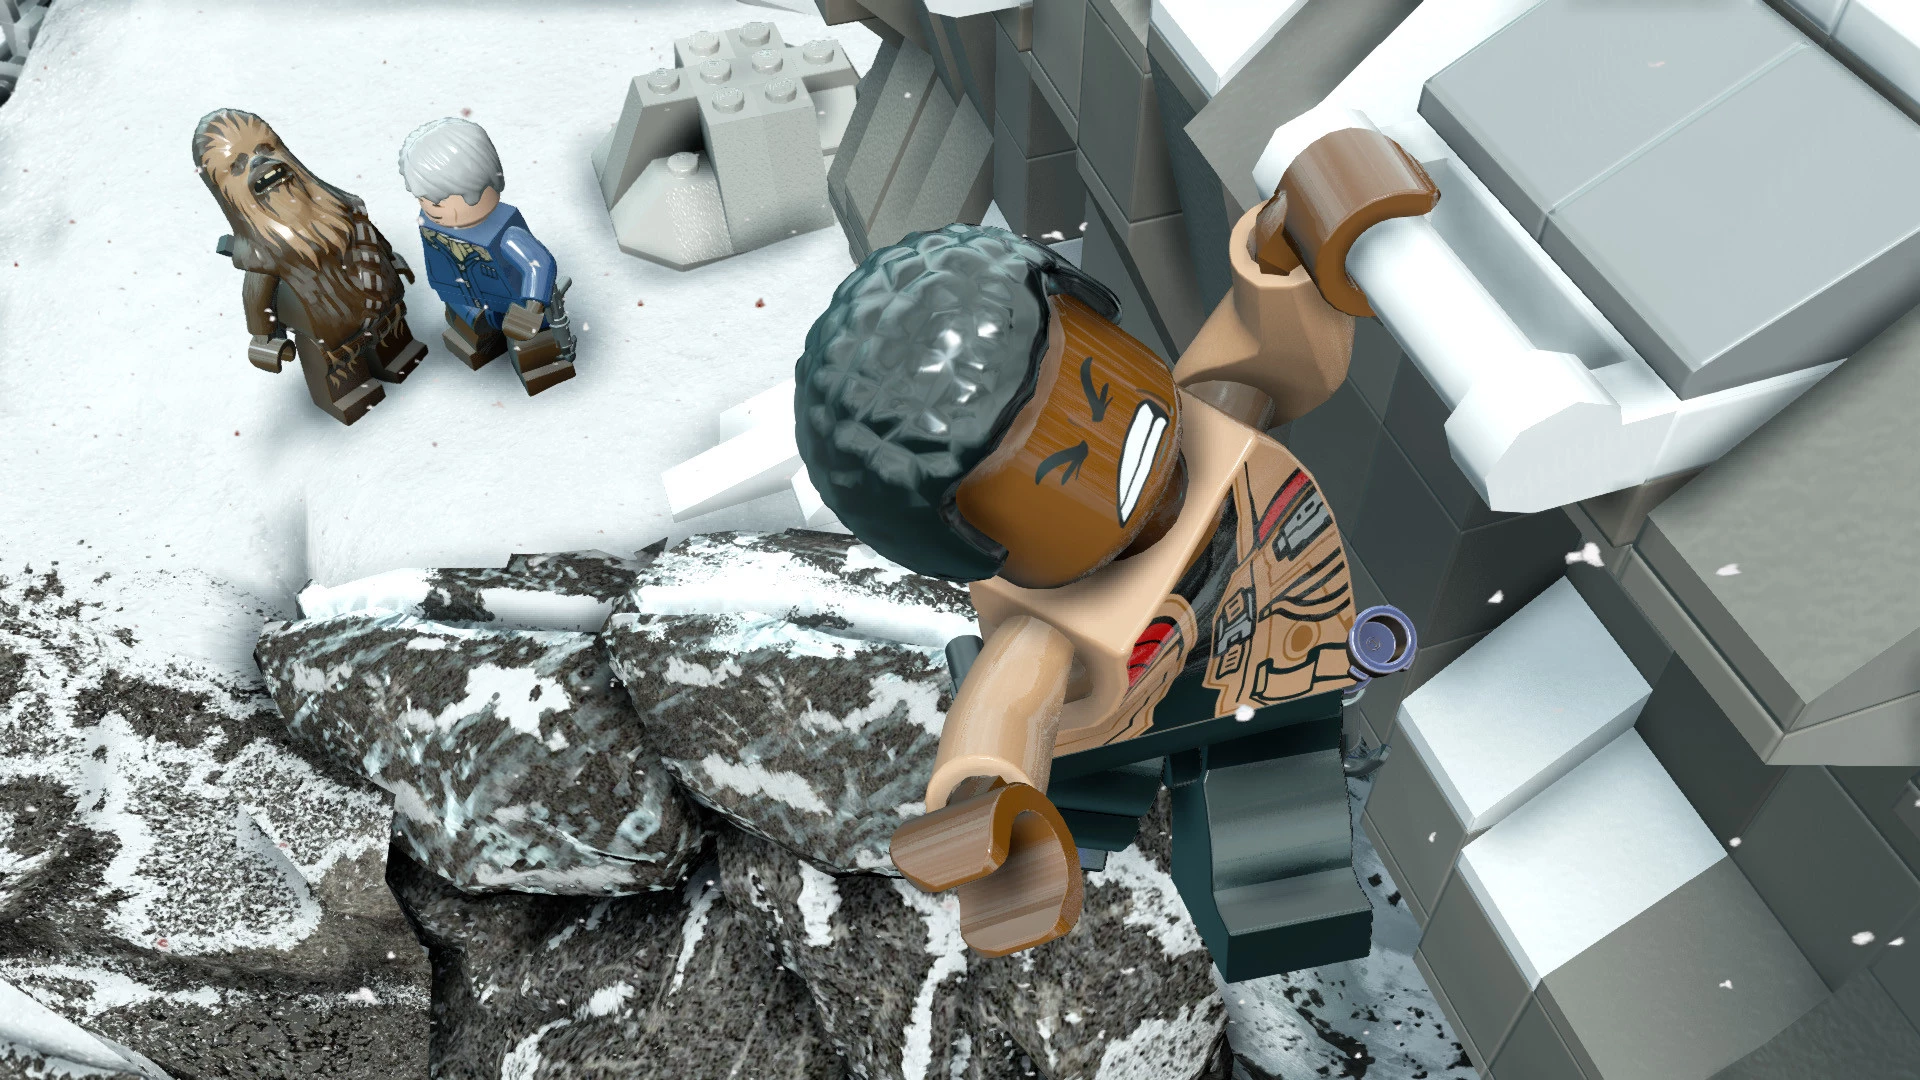 Lego Star Wars: The Force Awakens voor de PS Vita kopen op nedgame.nl